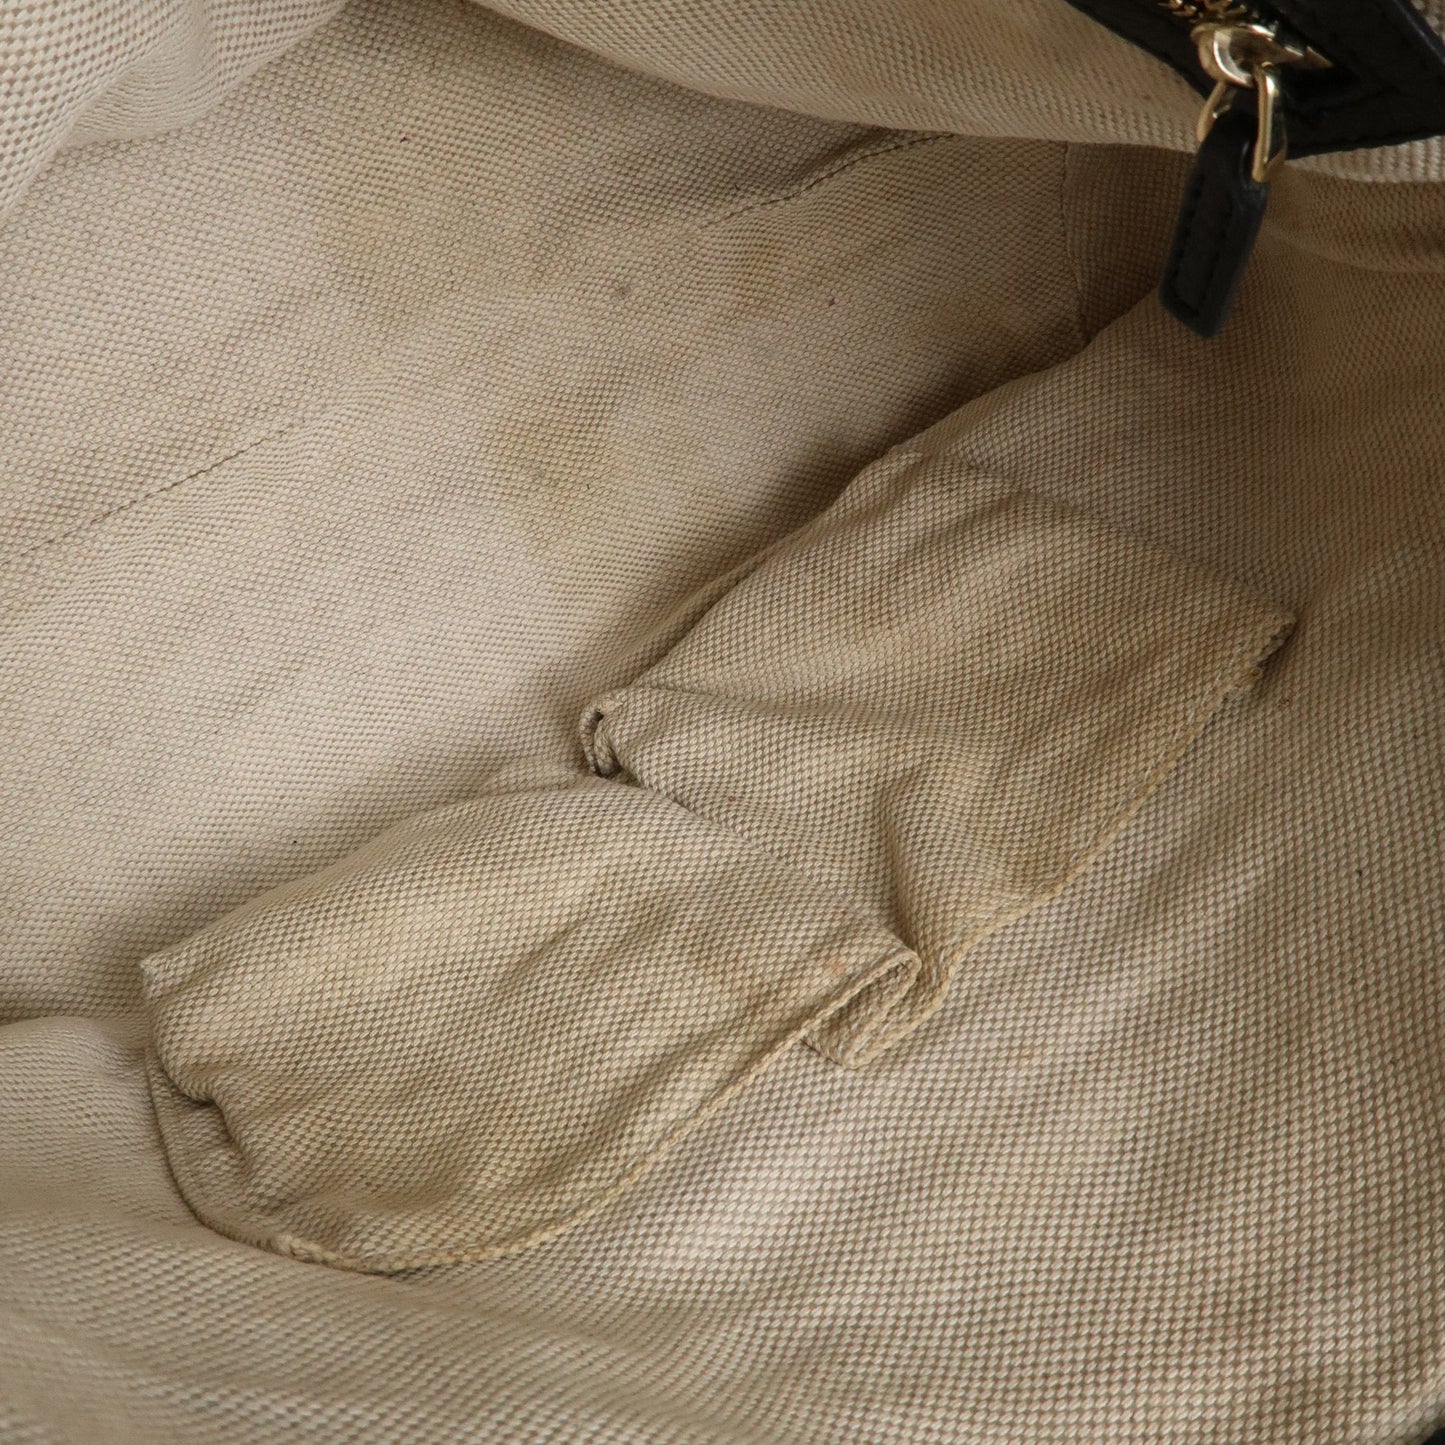 GUCCI SOHO Leather 2Way Shoulder Bag Black 308362